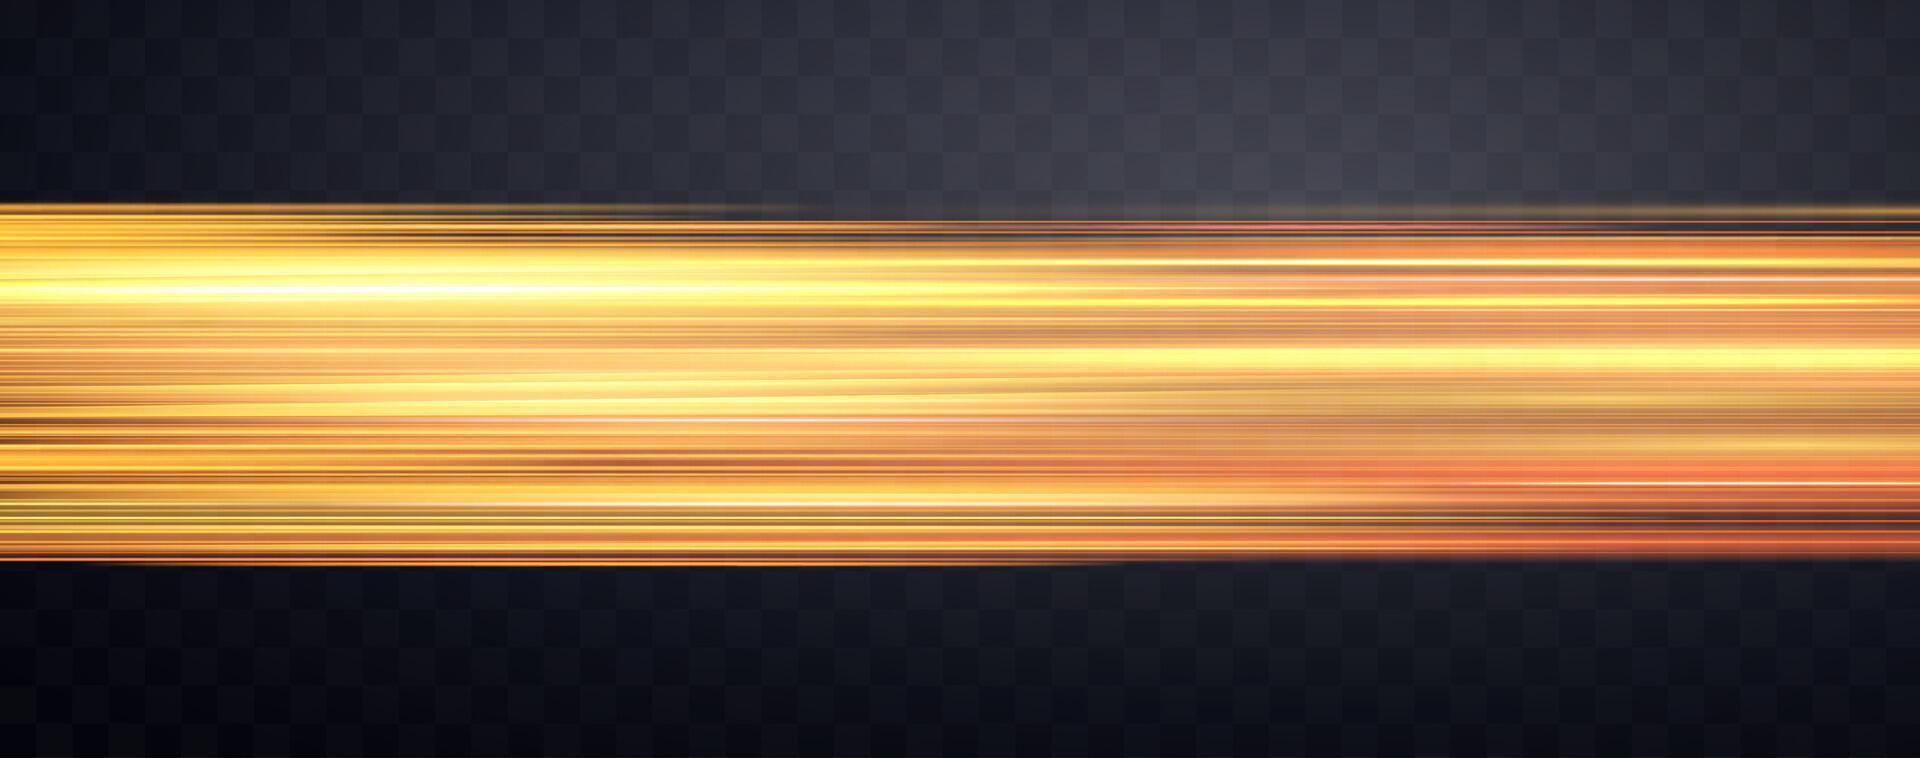 snelheid stralen, snelheid licht neon stromen, zoom in beweging effect, oranje gloed snelheid lijnen, kleurrijk licht paden, strepen. abstract achtergrond, vector illustratie.